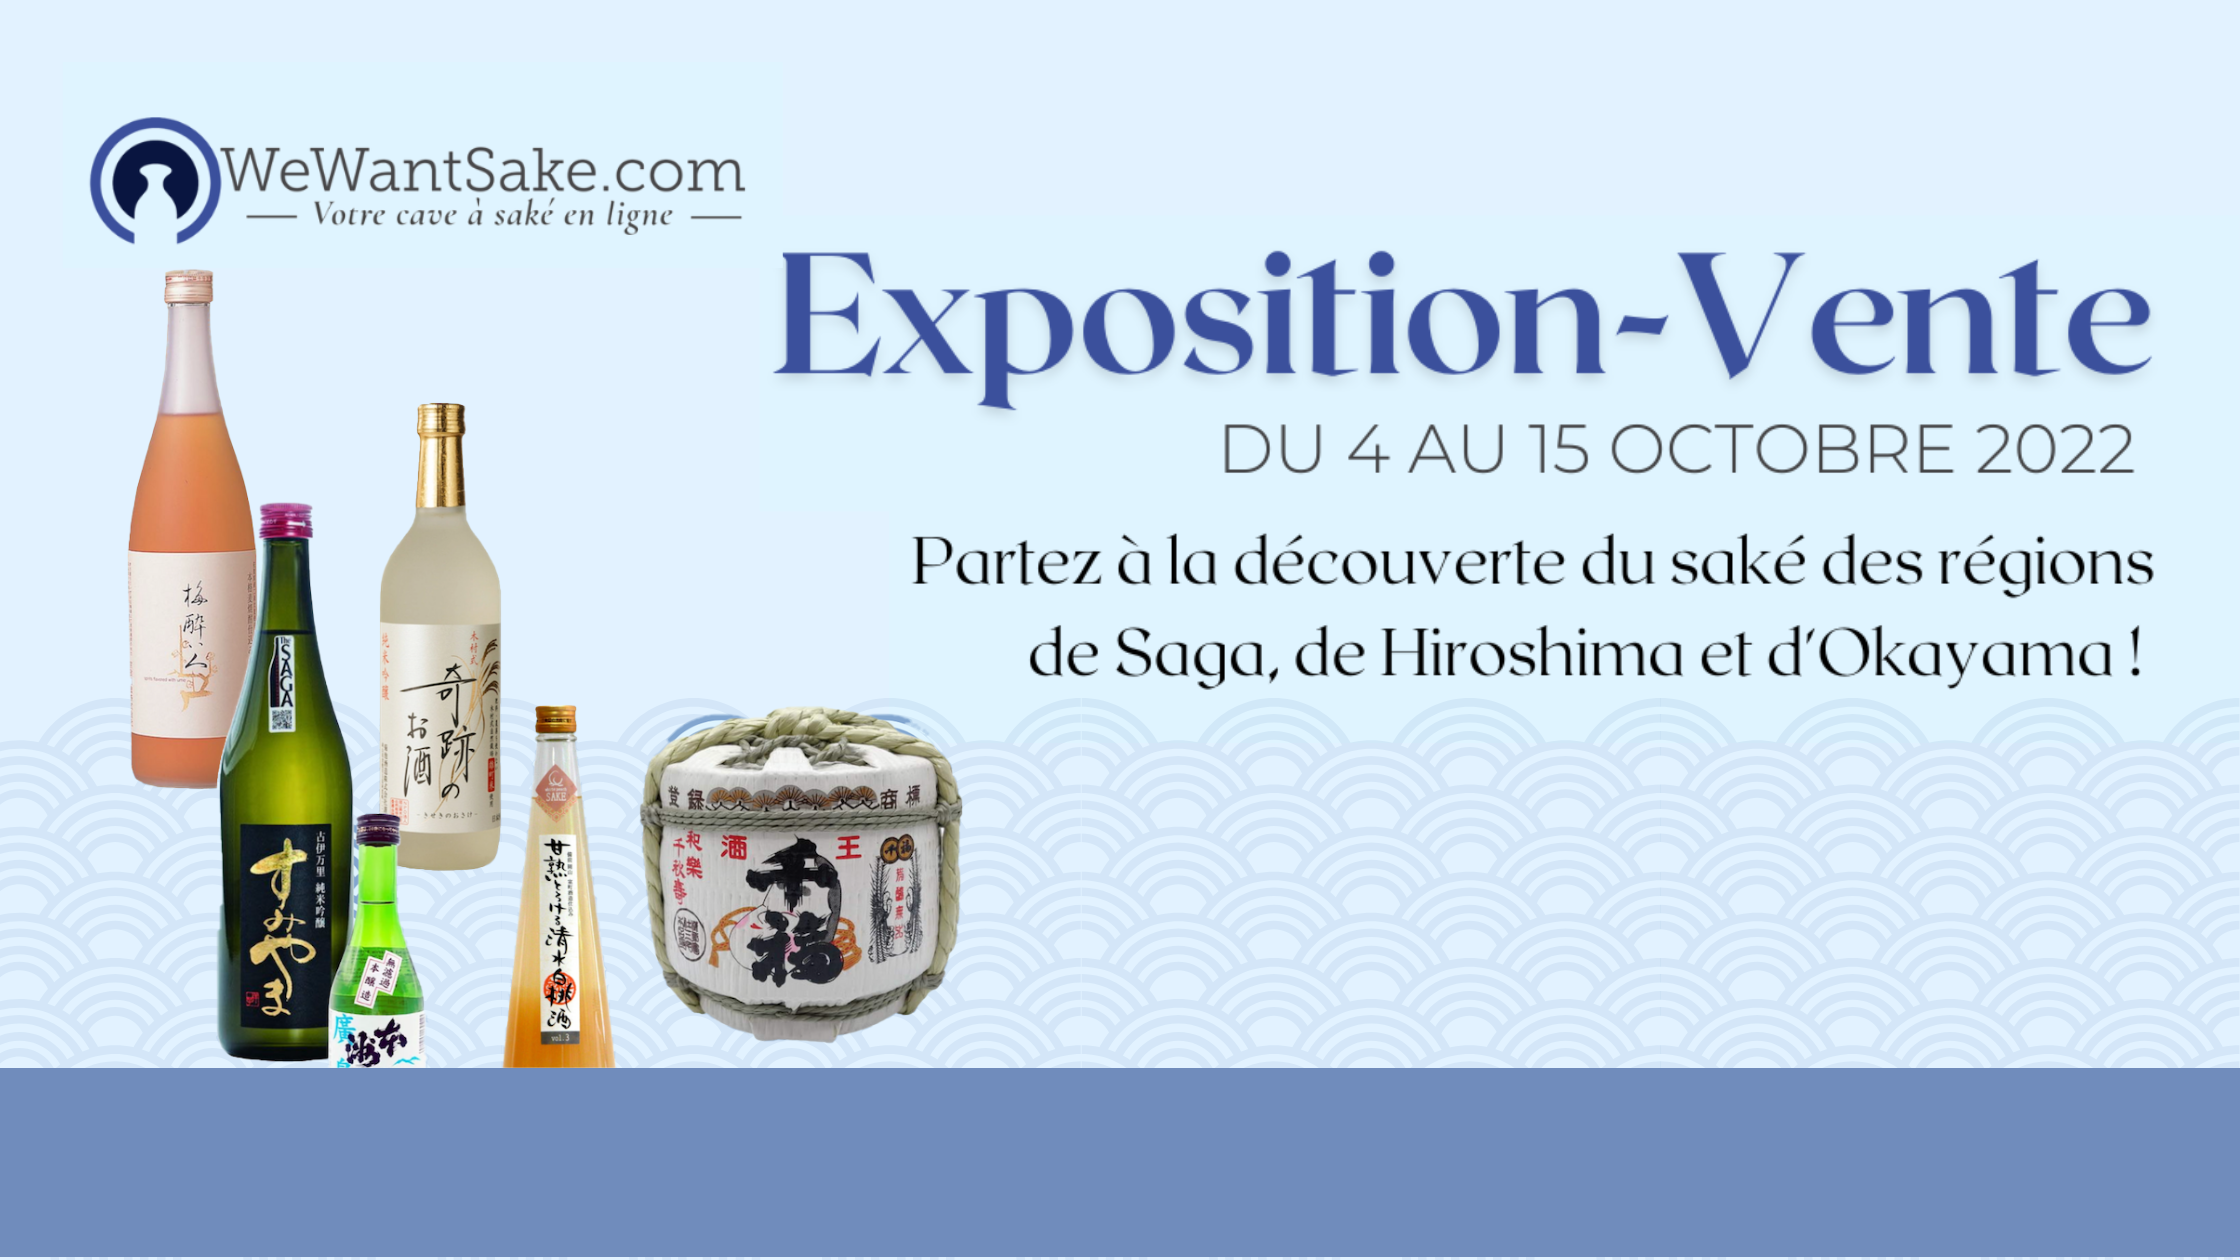 Du 4 au 15 octobre 2022 | Exposition-vente des sakés de la cave en ligne WeWantSaké